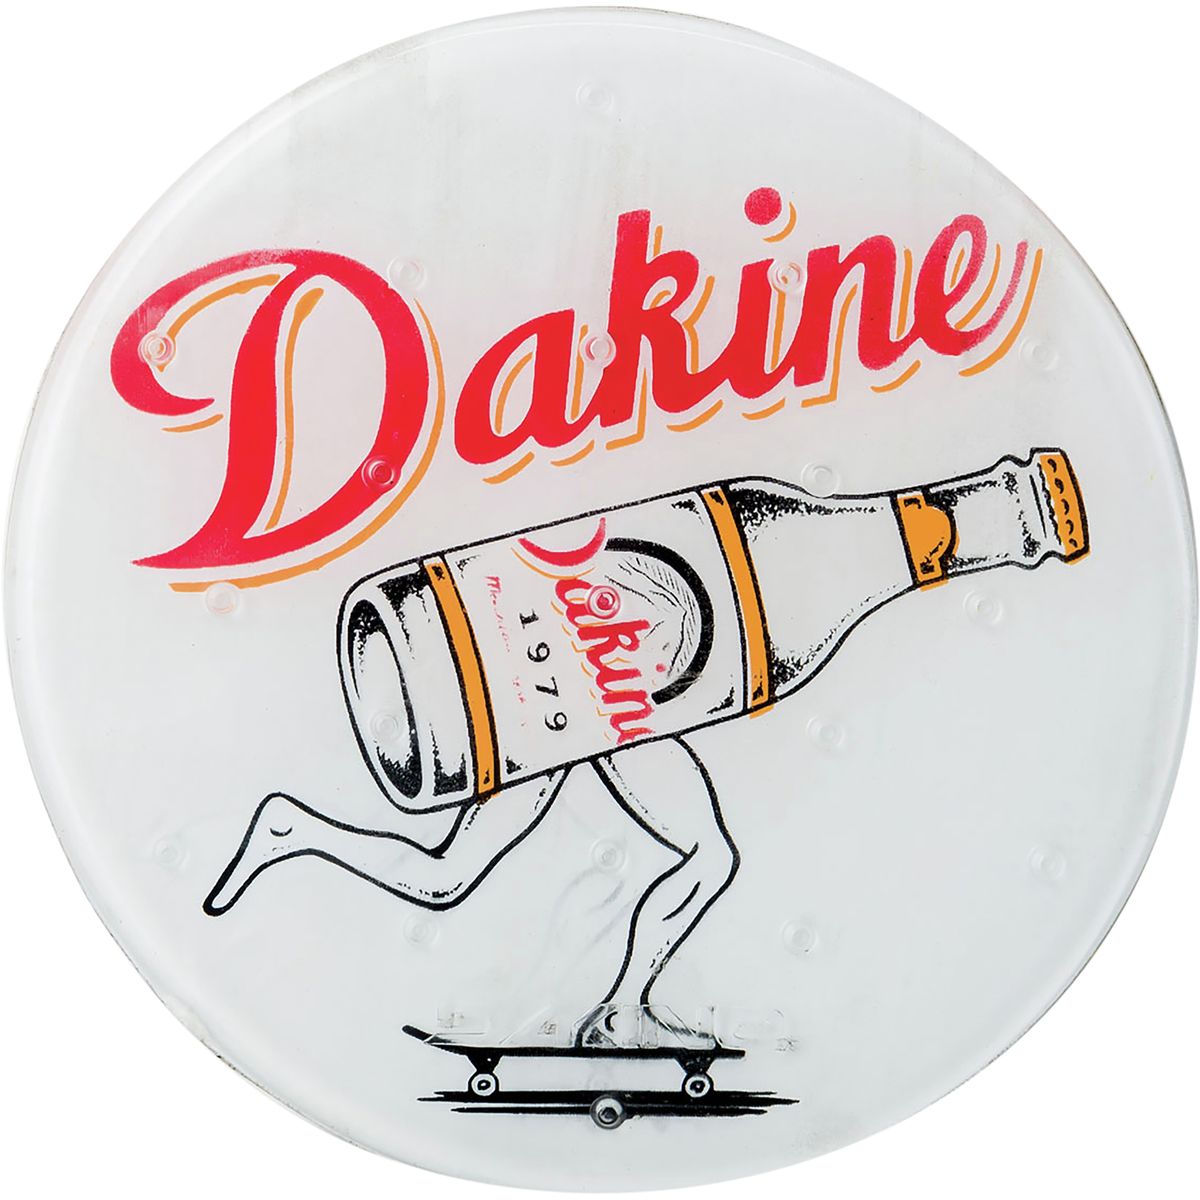 DAKINE Circle Mat Stomp Pad Beer Run